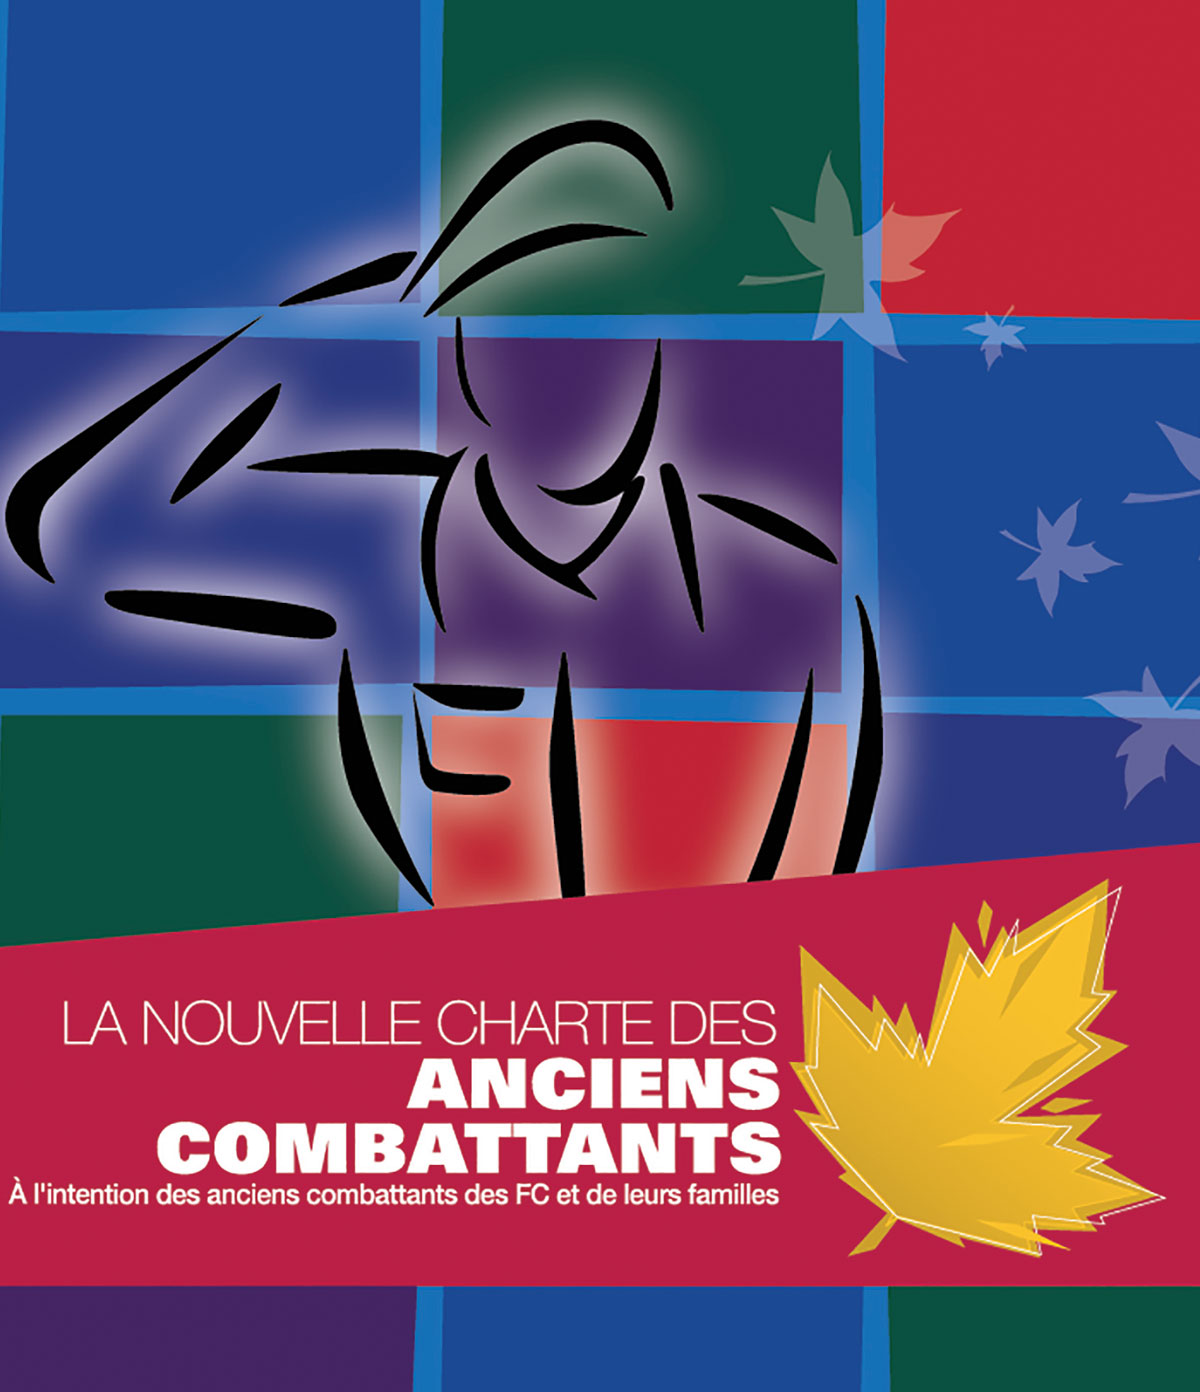 La couverture de la brochure de la Nouvelle Charte des anciens combattants.